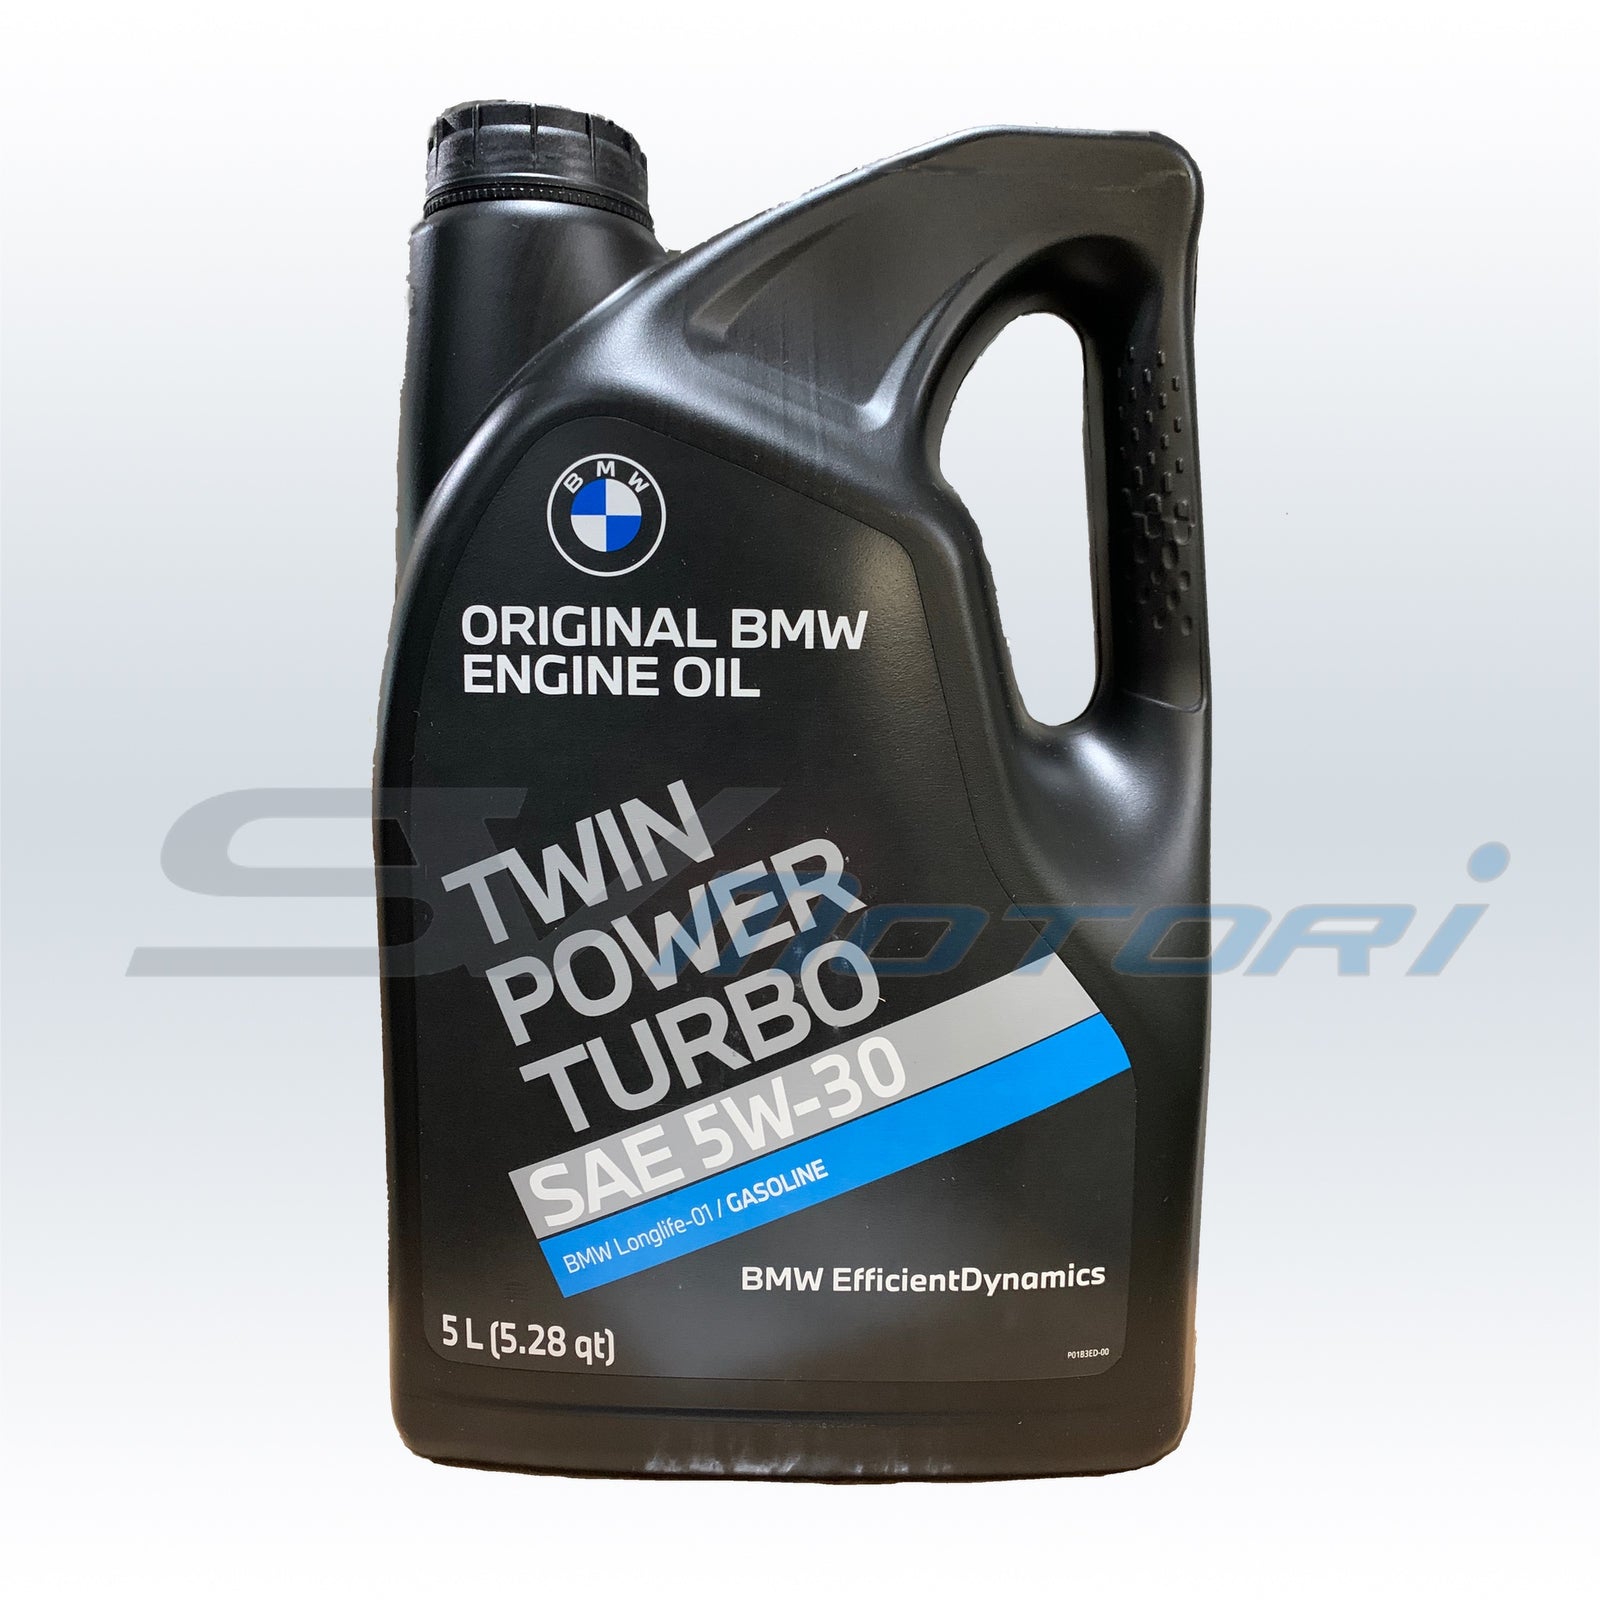 Original BMW Twin Power Turbo Longlife-04 5W-30 Motoröl 1l - SAE 5W-30 -  Auto/PKW Motoröle (SAE) - Öle 